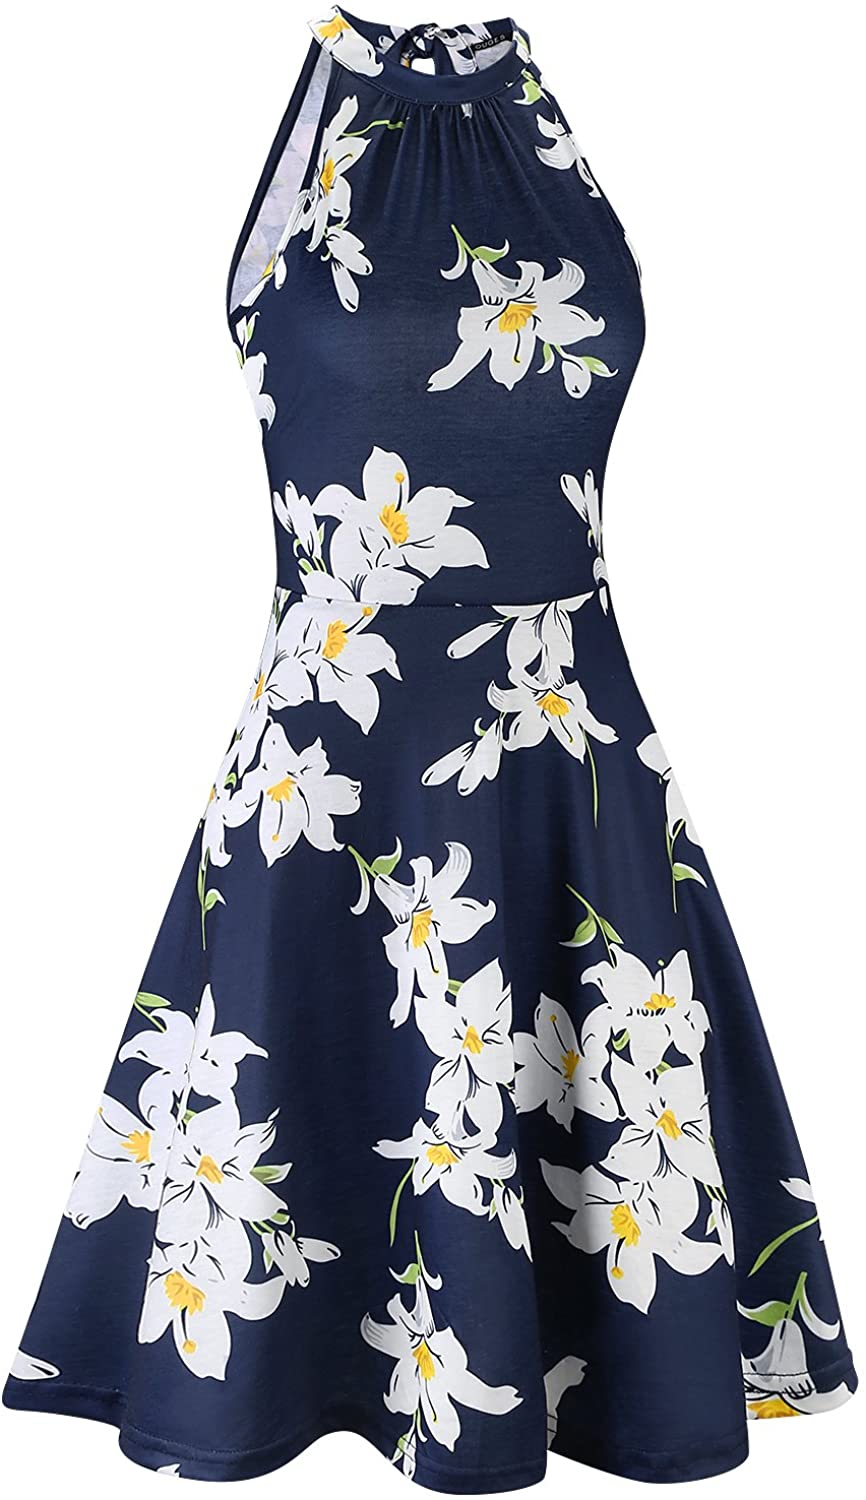 OUGES Women's Halter Neck Floral Summer Casual Sundress | eBay